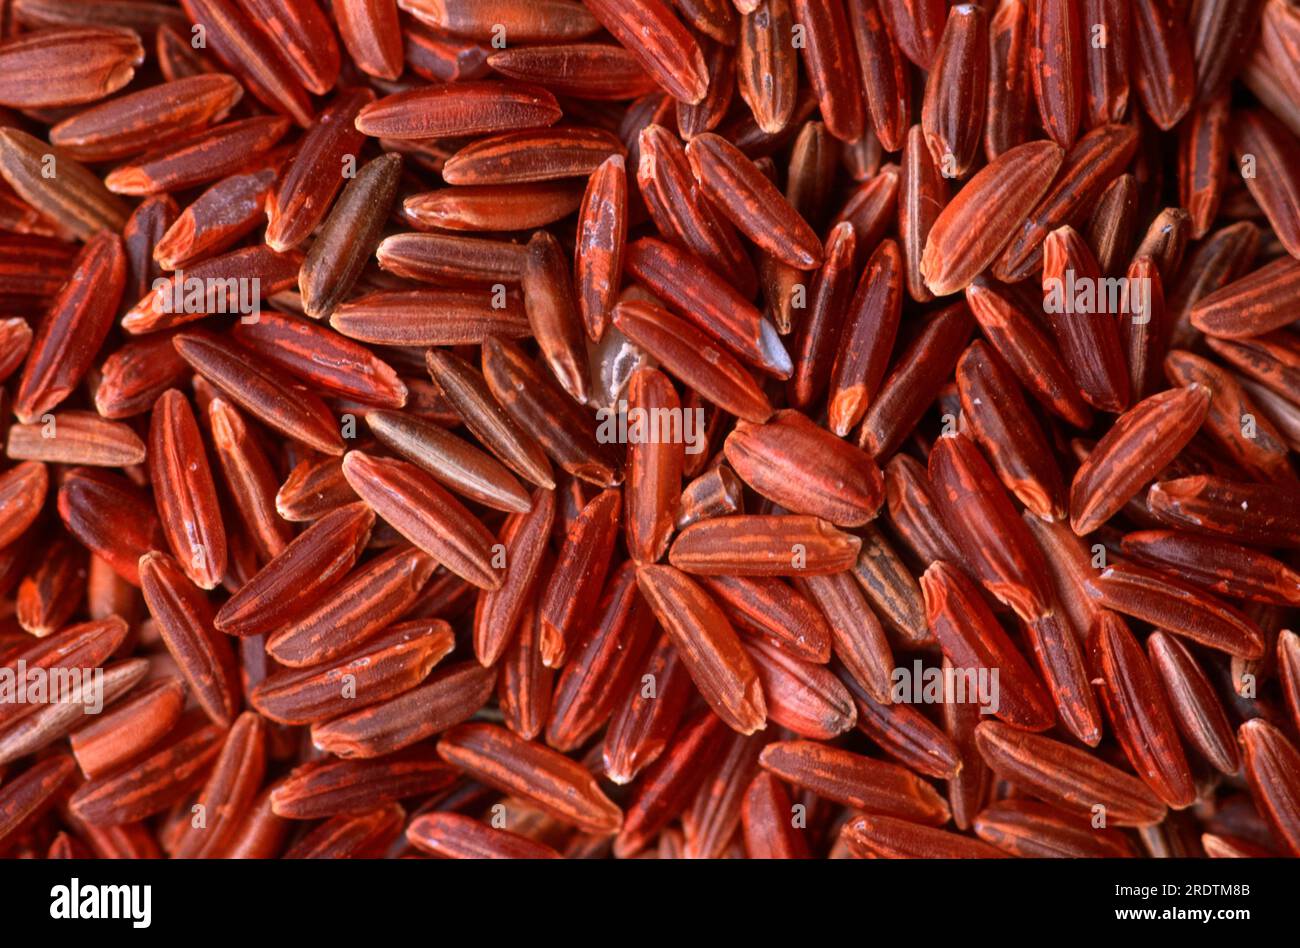 Wild rice (Zizania palustris) Stock Photo